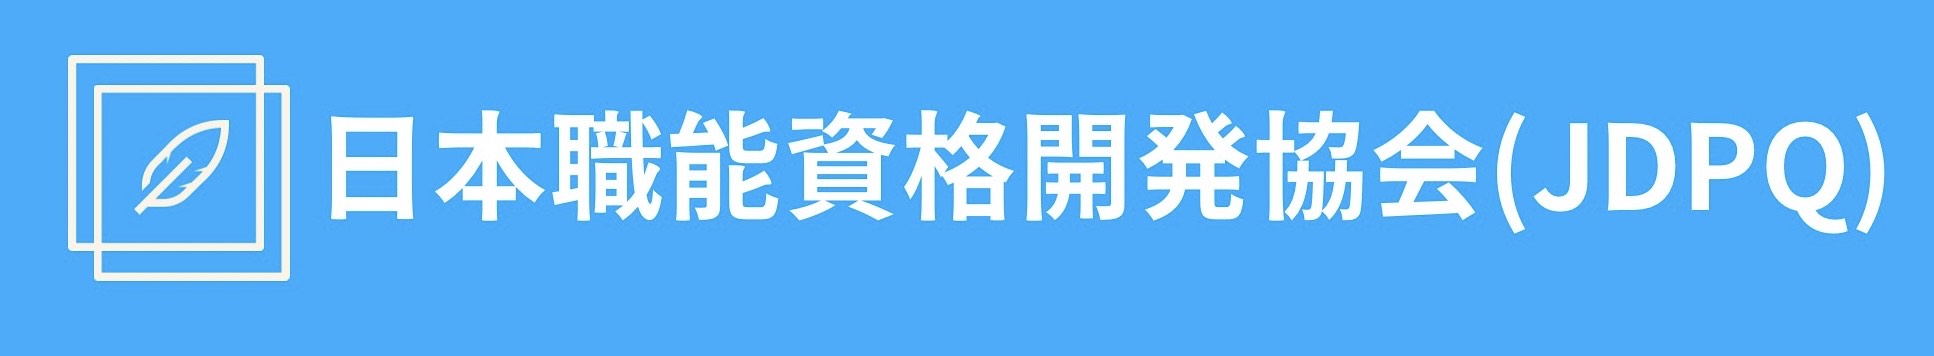 日本職能資格開発協会(JDPQ)